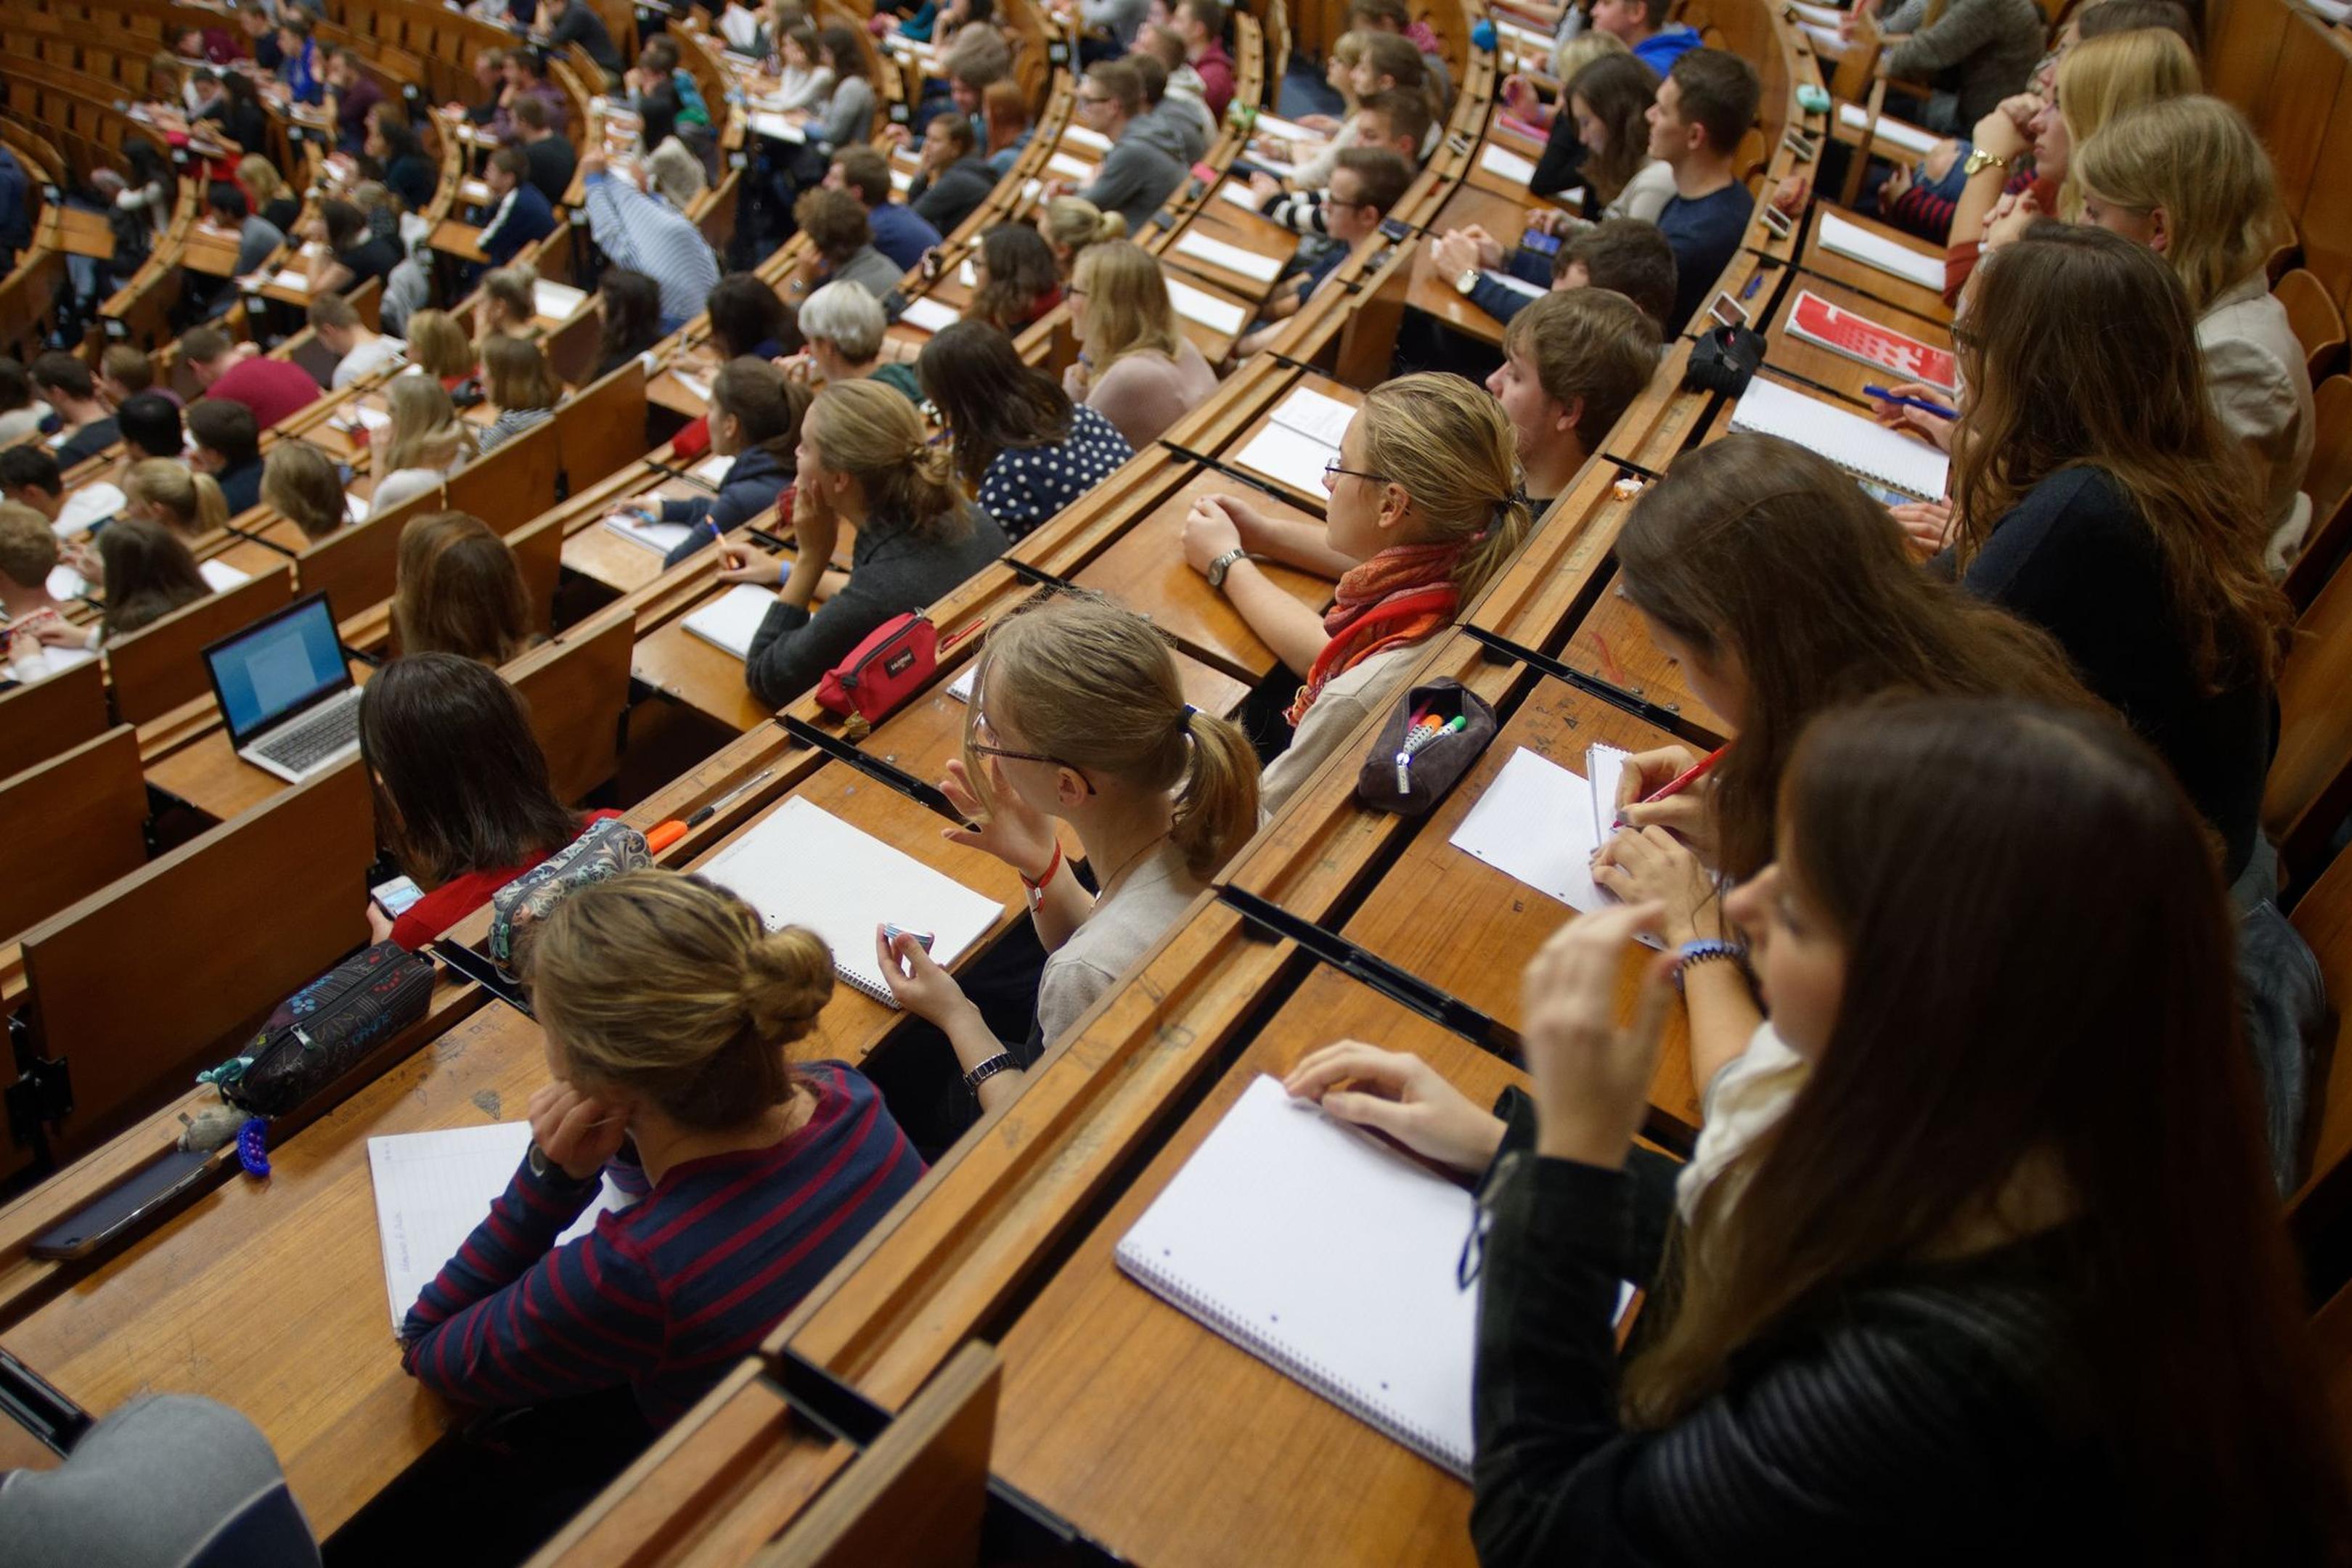 Studenten und Studentinnen während einer Vorlesung.